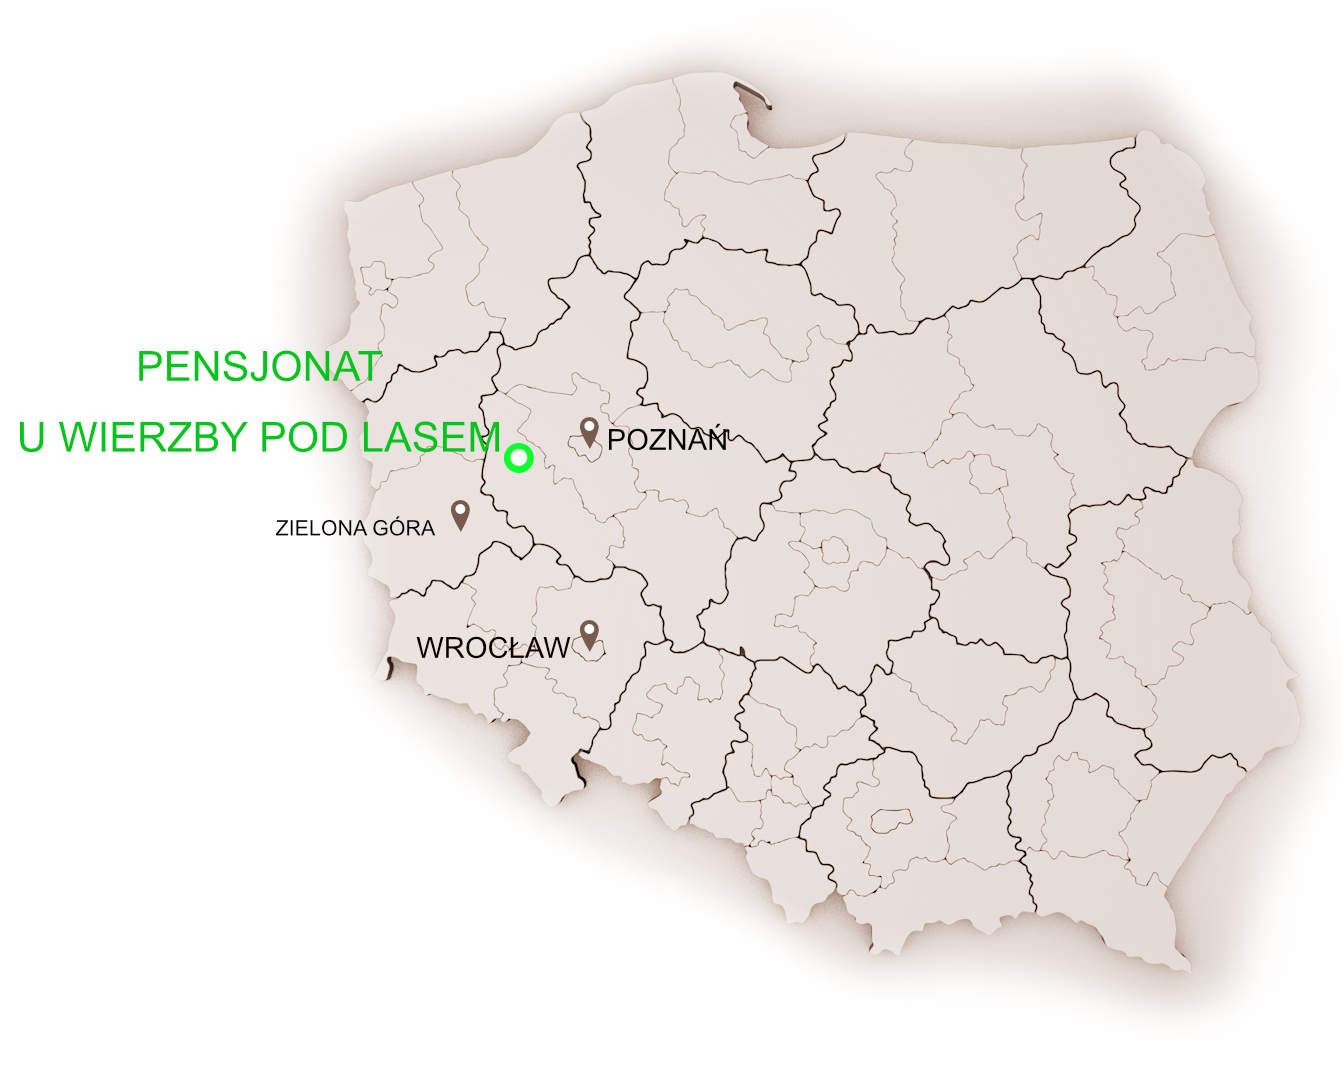 Pensjonat U Wierzby Pod Lasem na mapie Polski